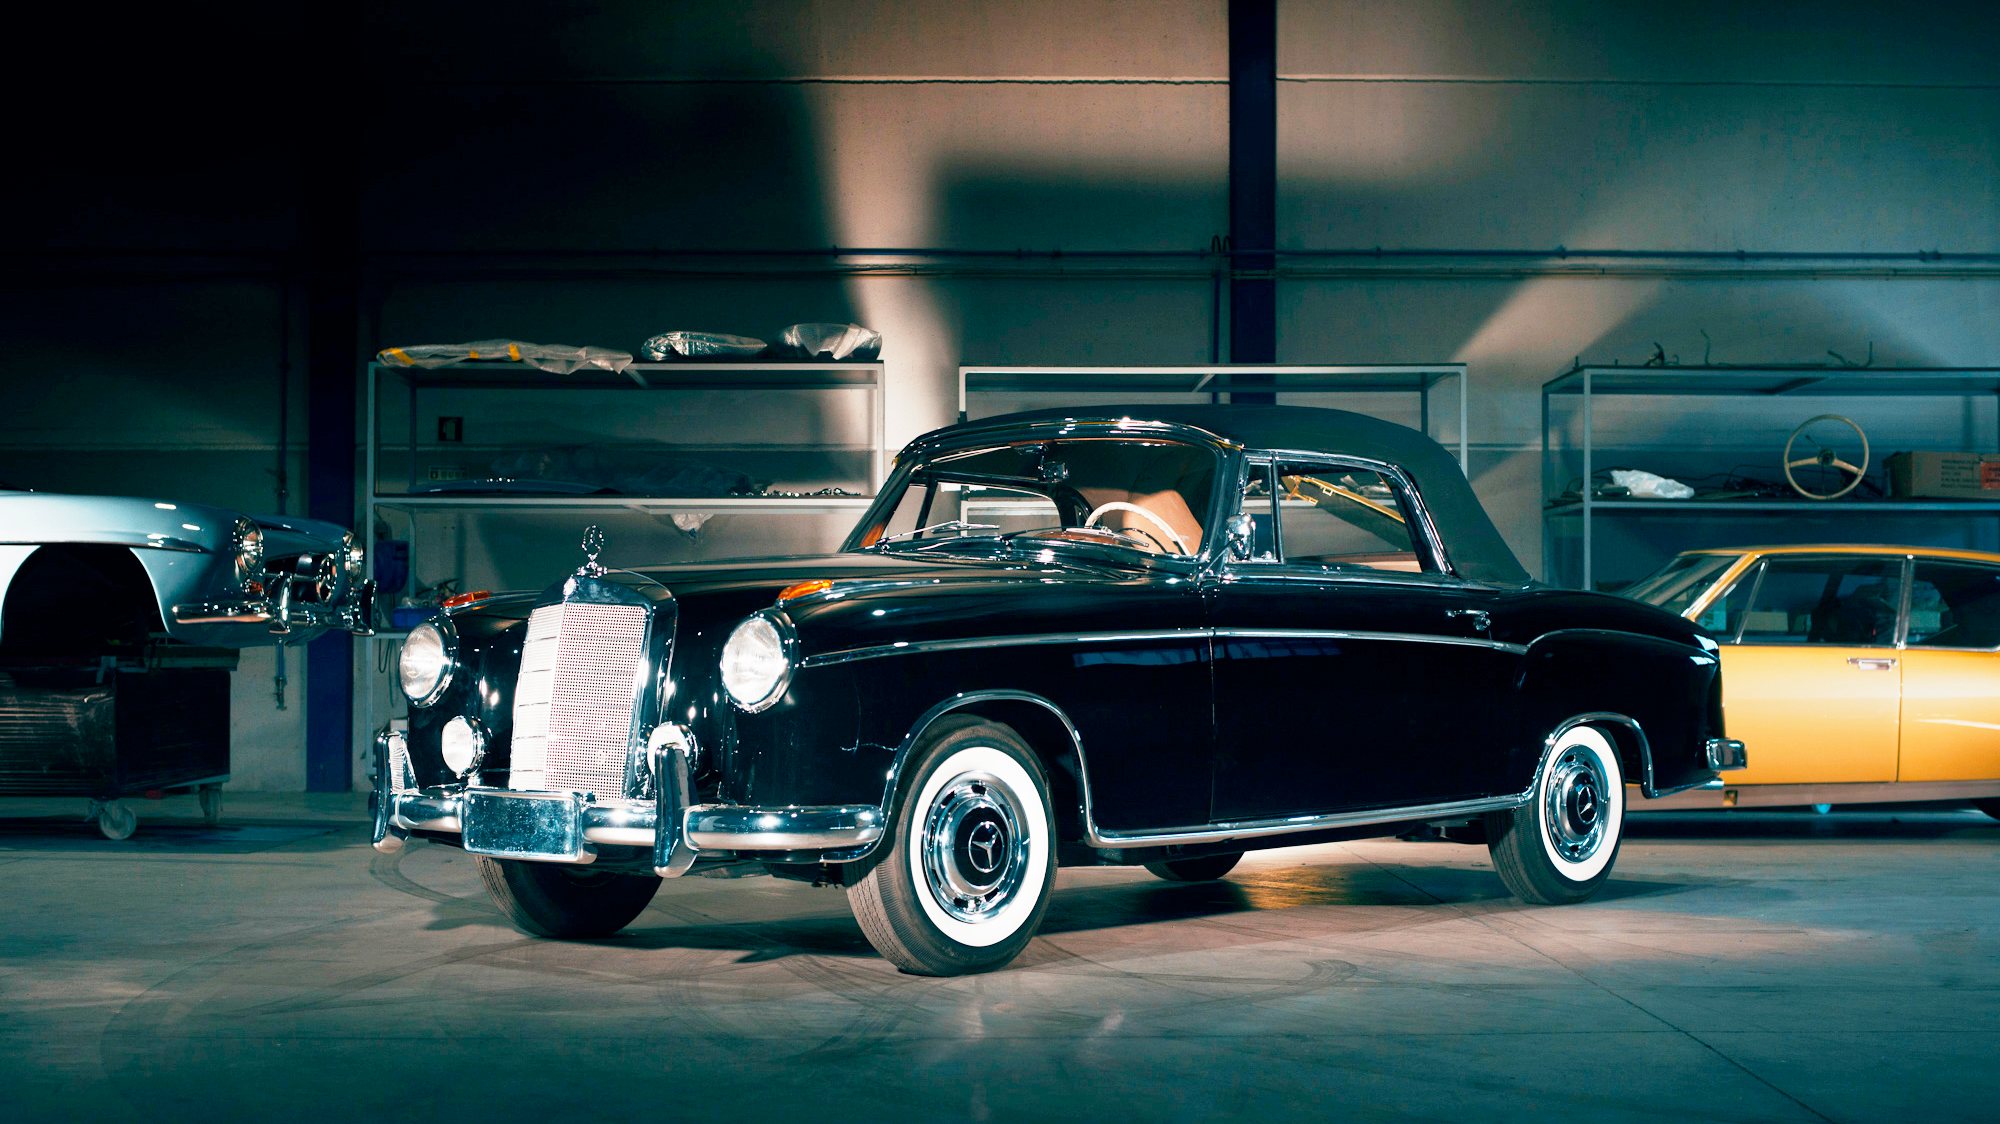 Um belo Ponton descapotável da Mercedes-Benz foi um dos primeiros clássicos restaurados no Alentejo